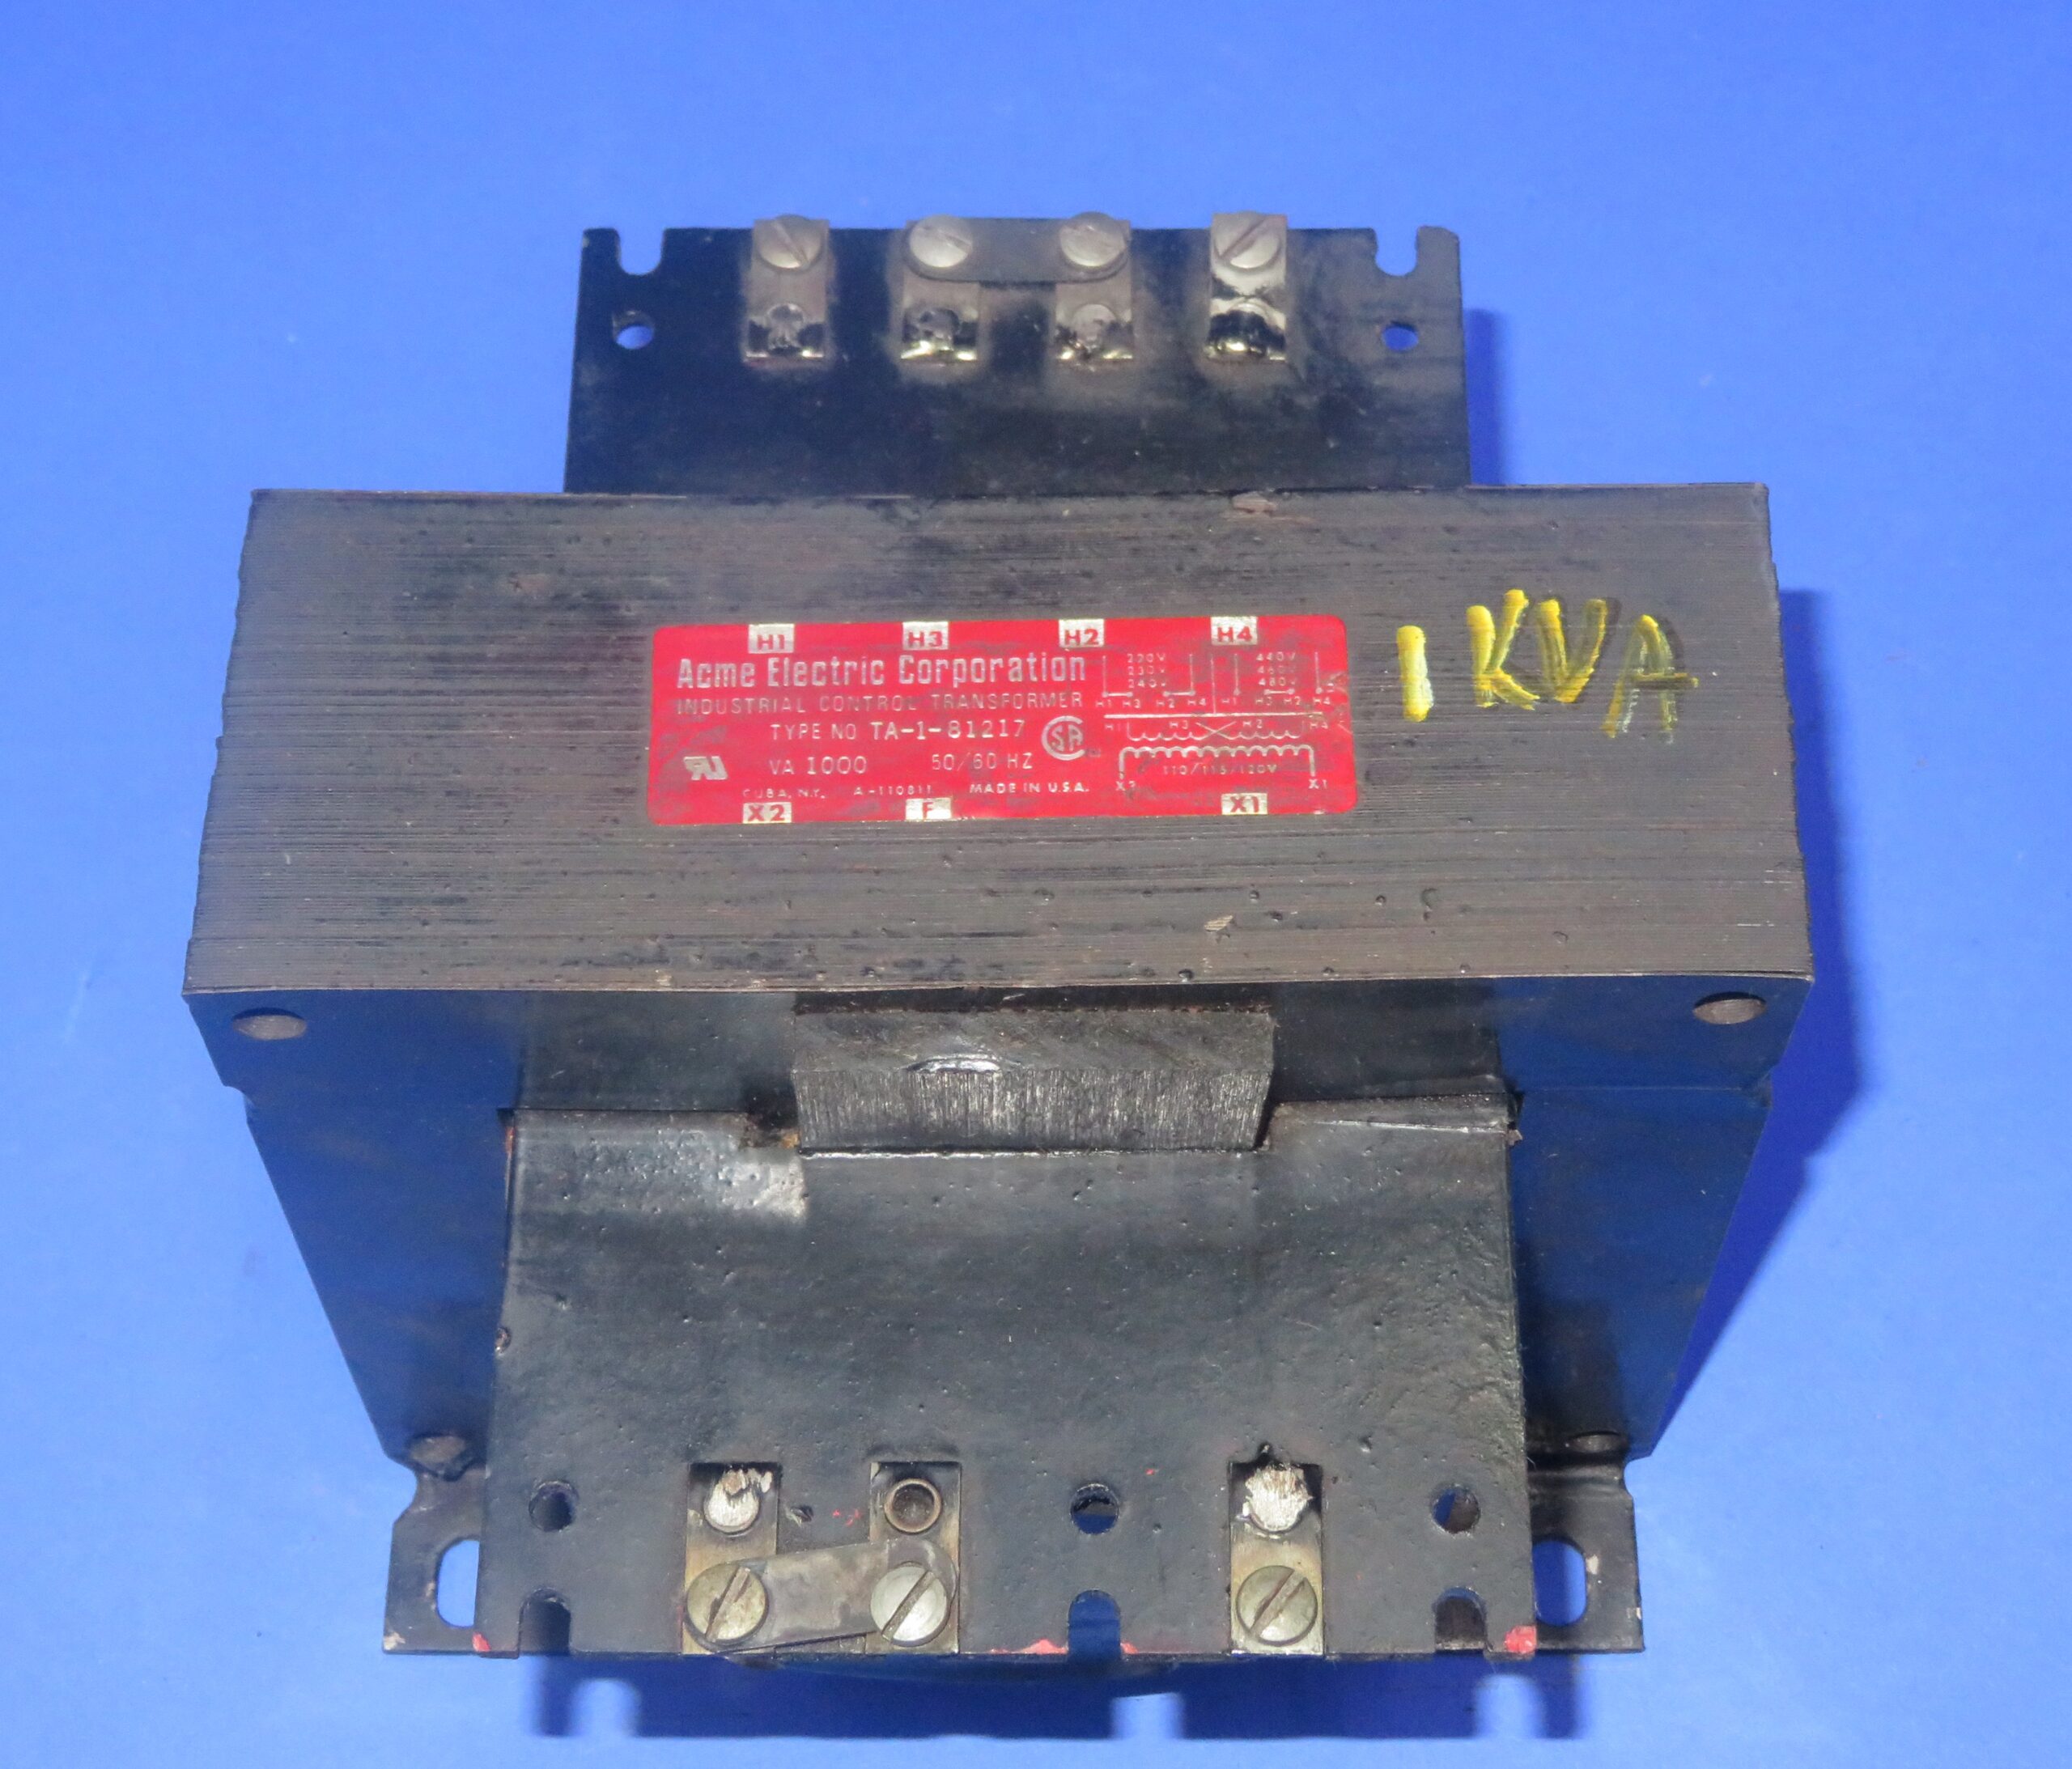 Acme TA-1-81217 1000VA Industrial Control Transformer + 1 Year Warranty